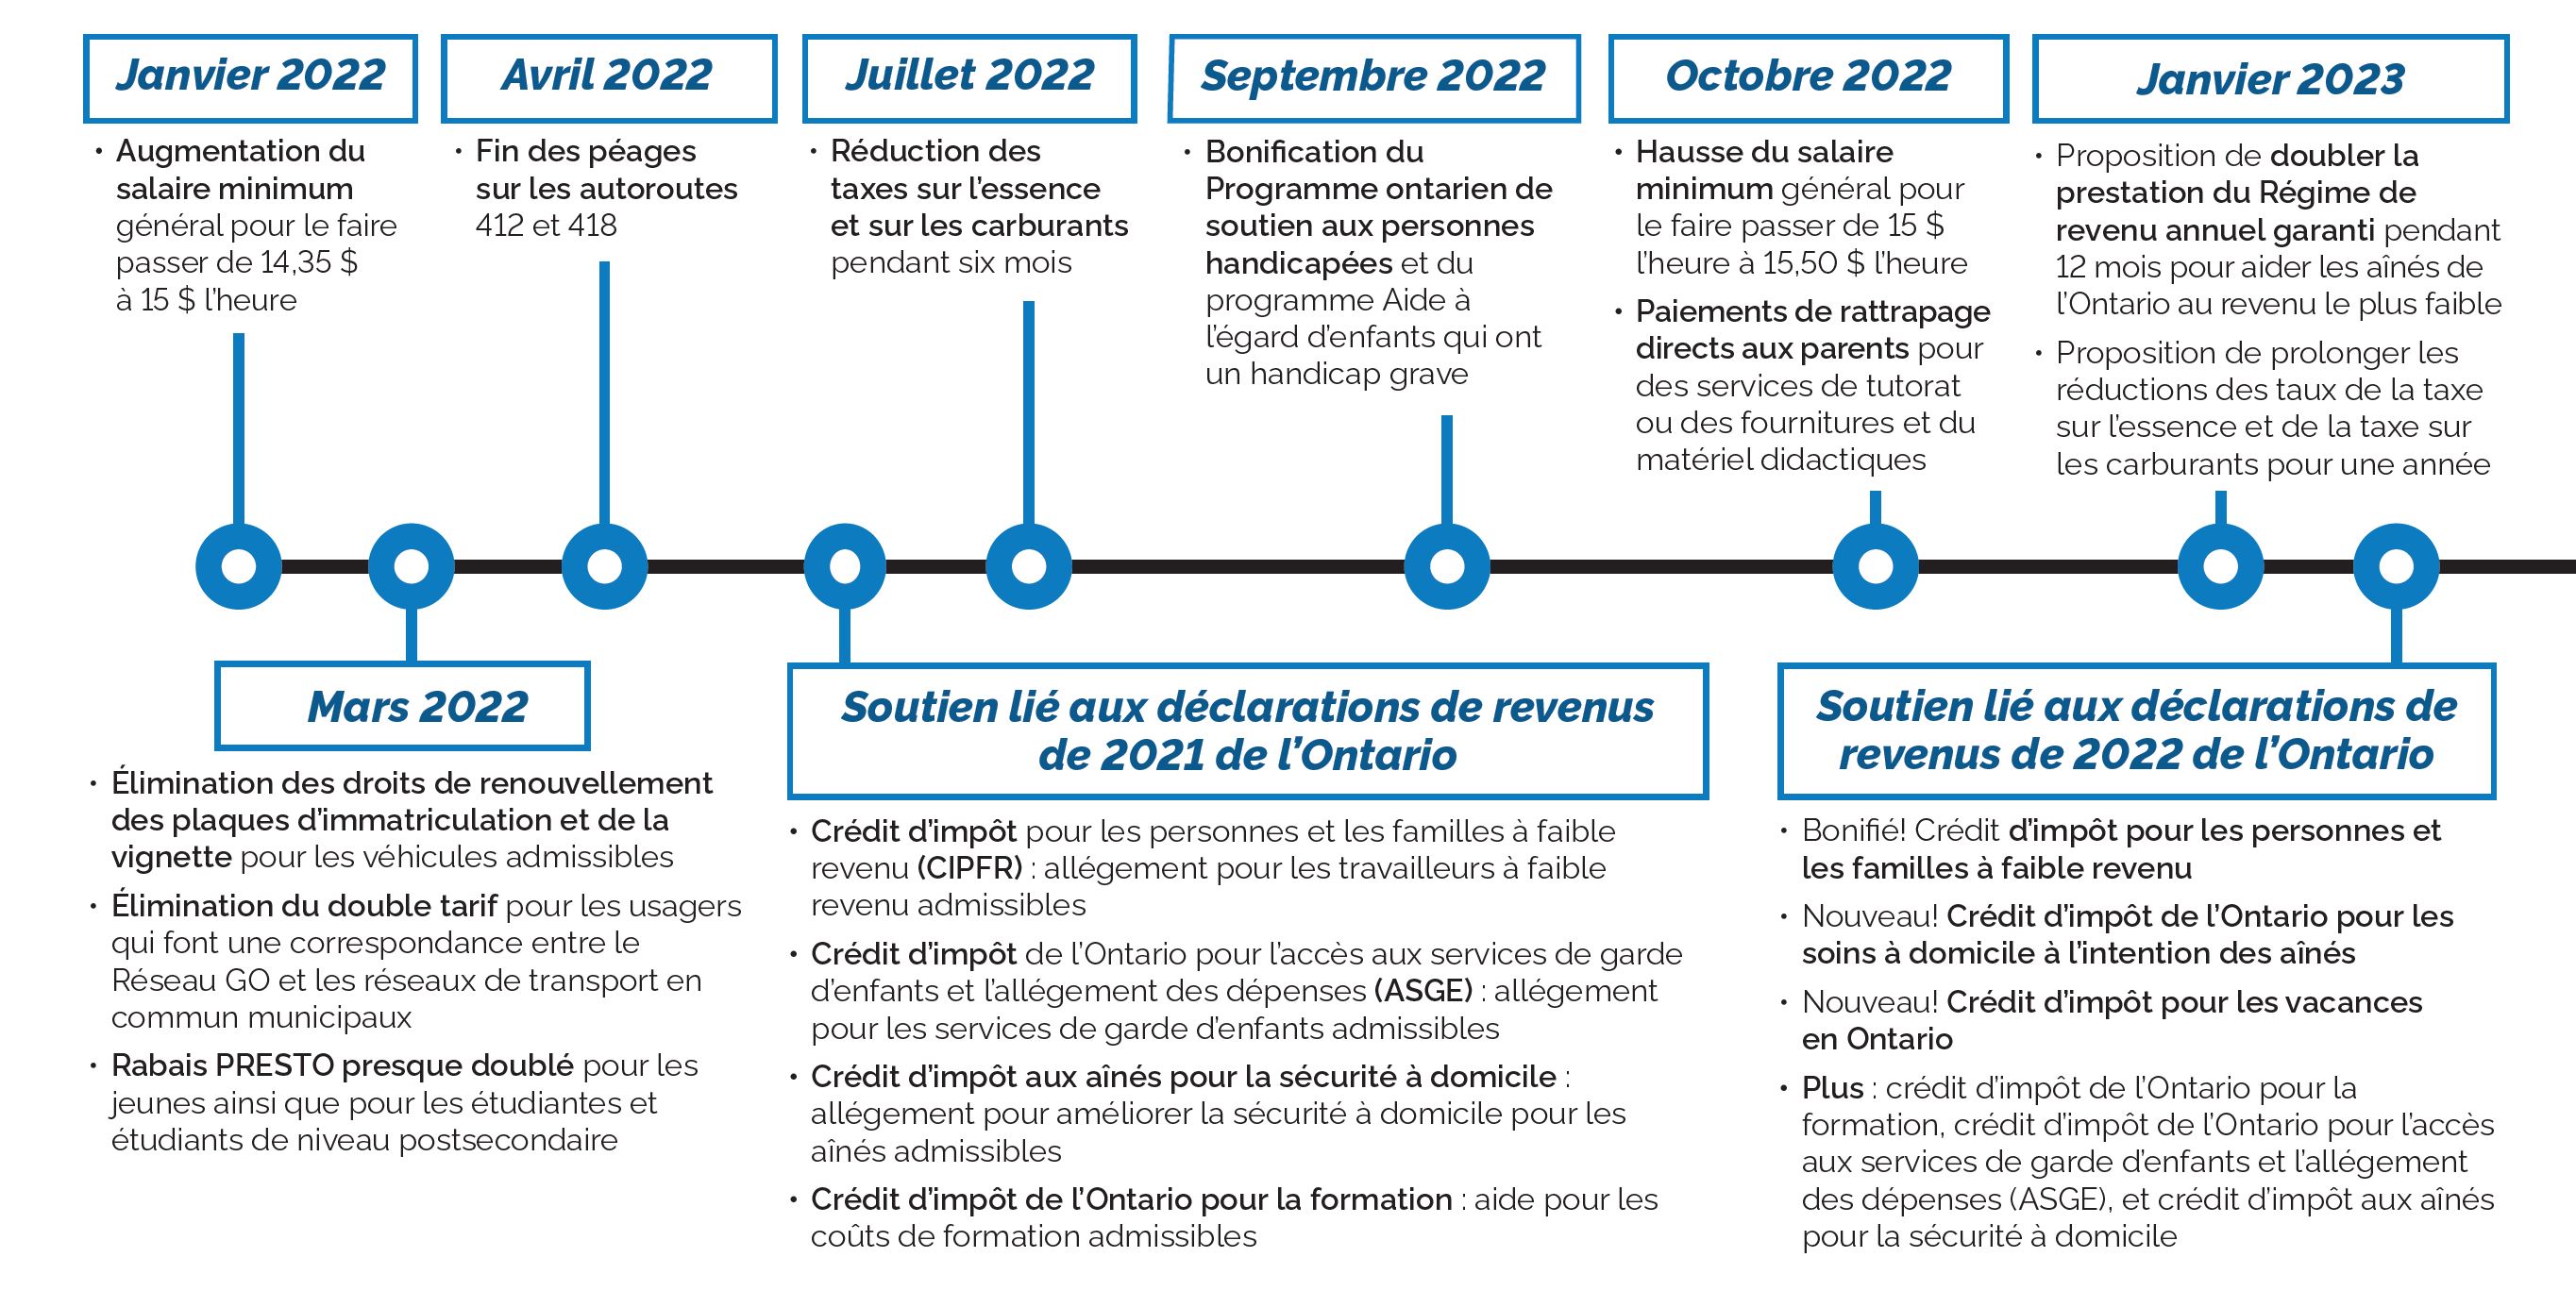 Mesures prises par le gouvernement de l’Ontario de janvier 2022 à mi-2023 pour garder les coûts bas